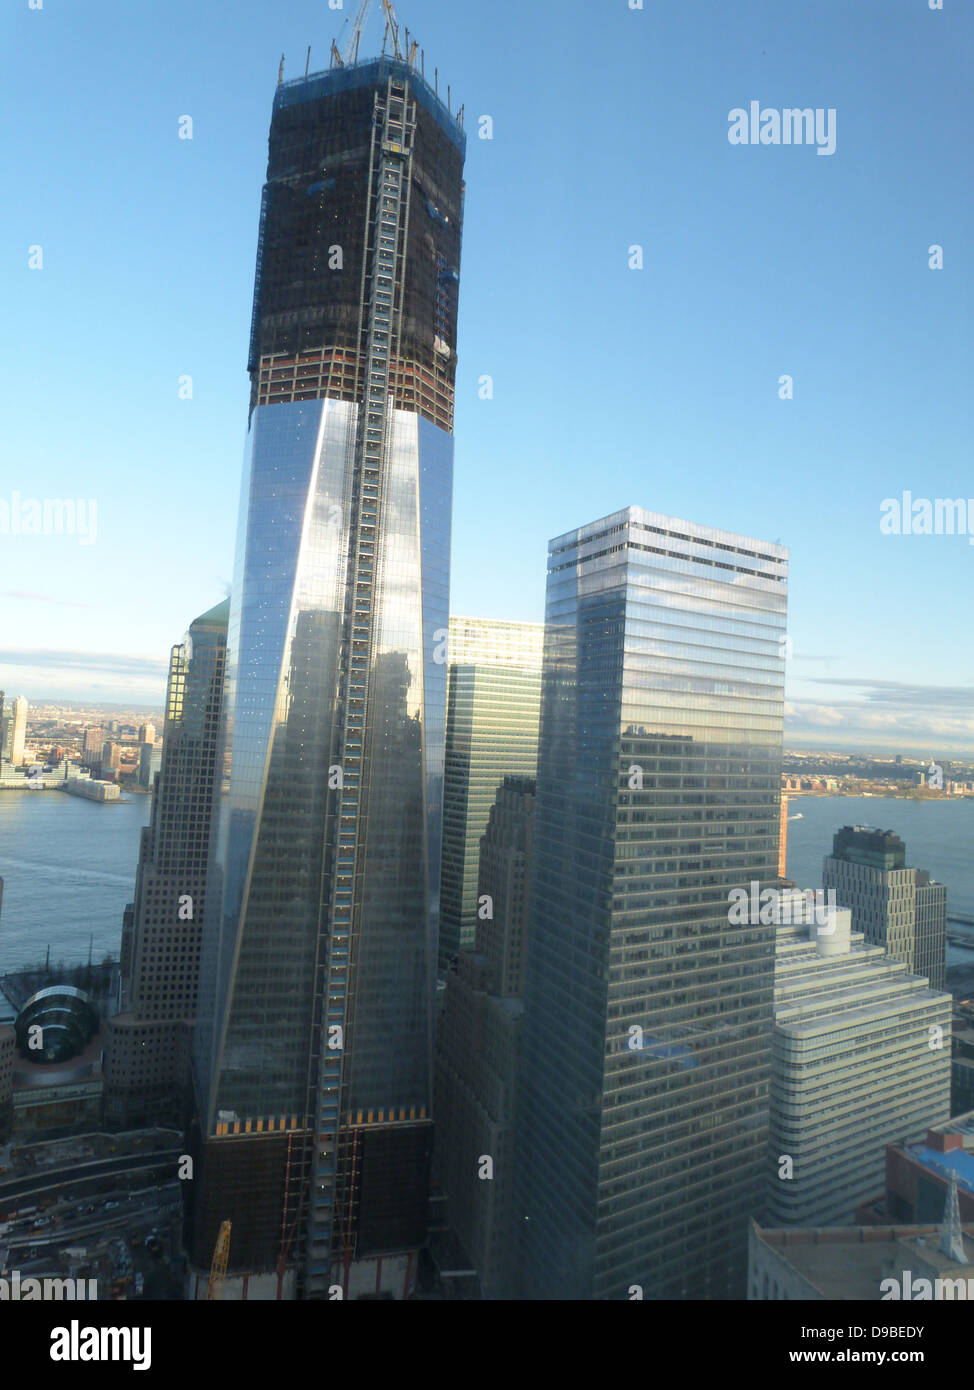 2012 Abril (izquierda) One World Trade Center (derecha) y el nuevo edificio del World Trade Center 7, re-construido aftre el ataque terrorista al World Trade Center, en Ground Zero, Nueva York, en septiembre de 2011. Foto de stock